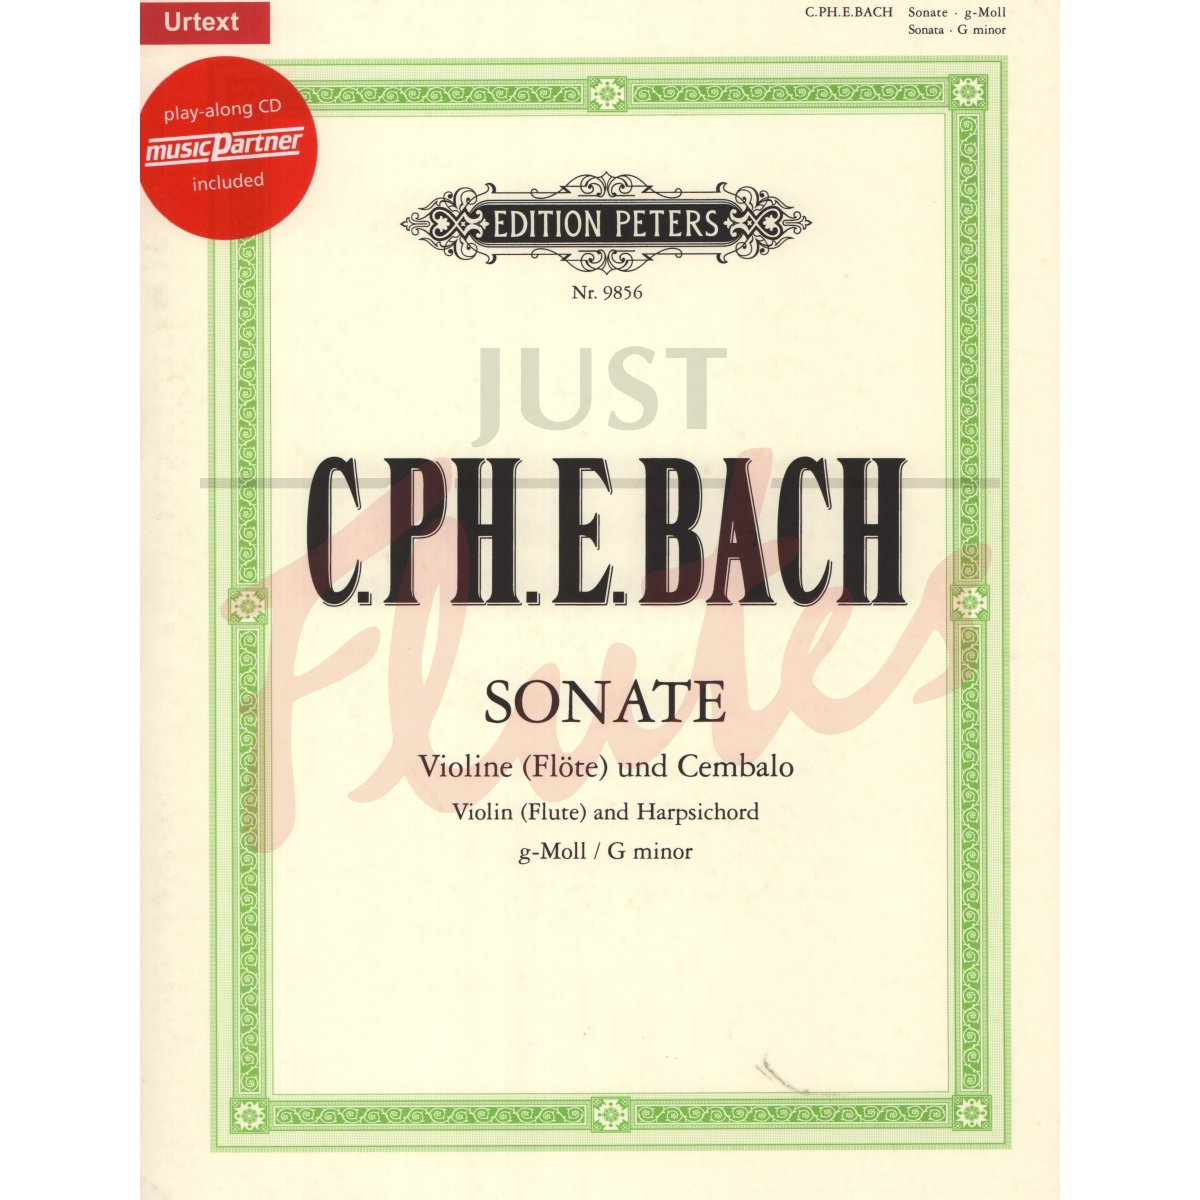 Sonata in G minor for Flute and Harpsichord/Piano